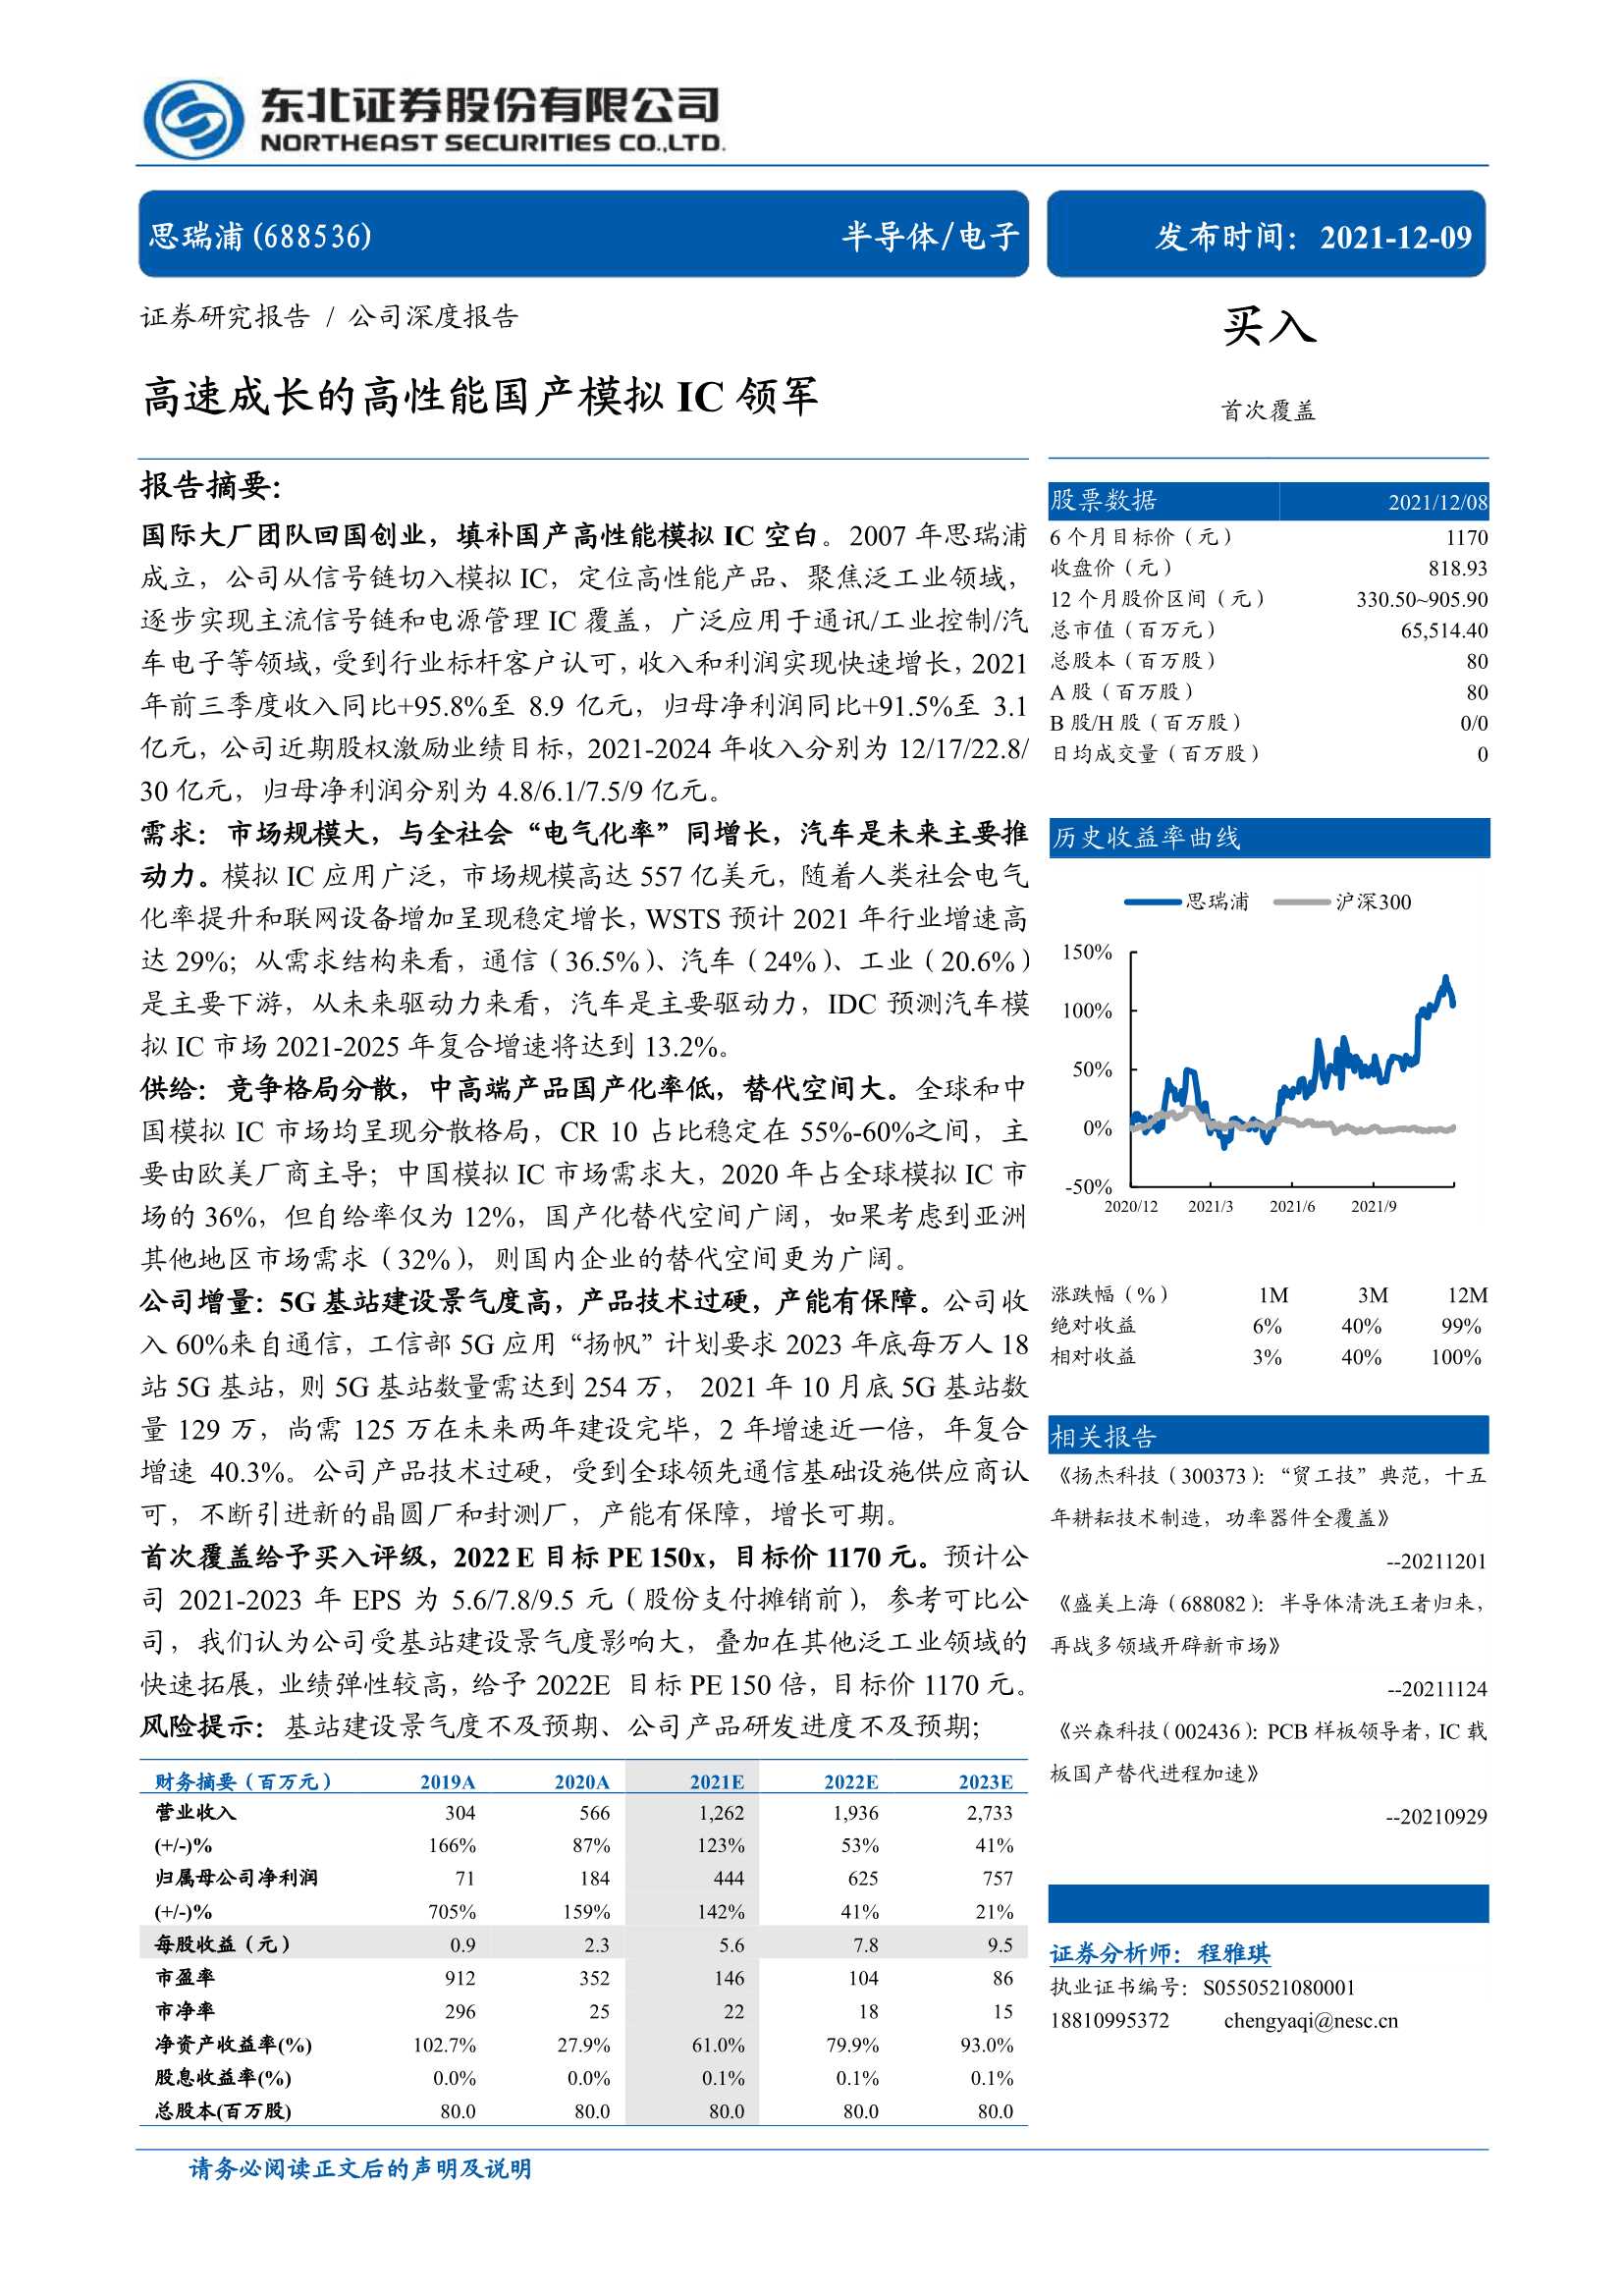 东北证券-思瑞浦-688536-高速成长的高性能国产模拟IC领军-20211209-35页